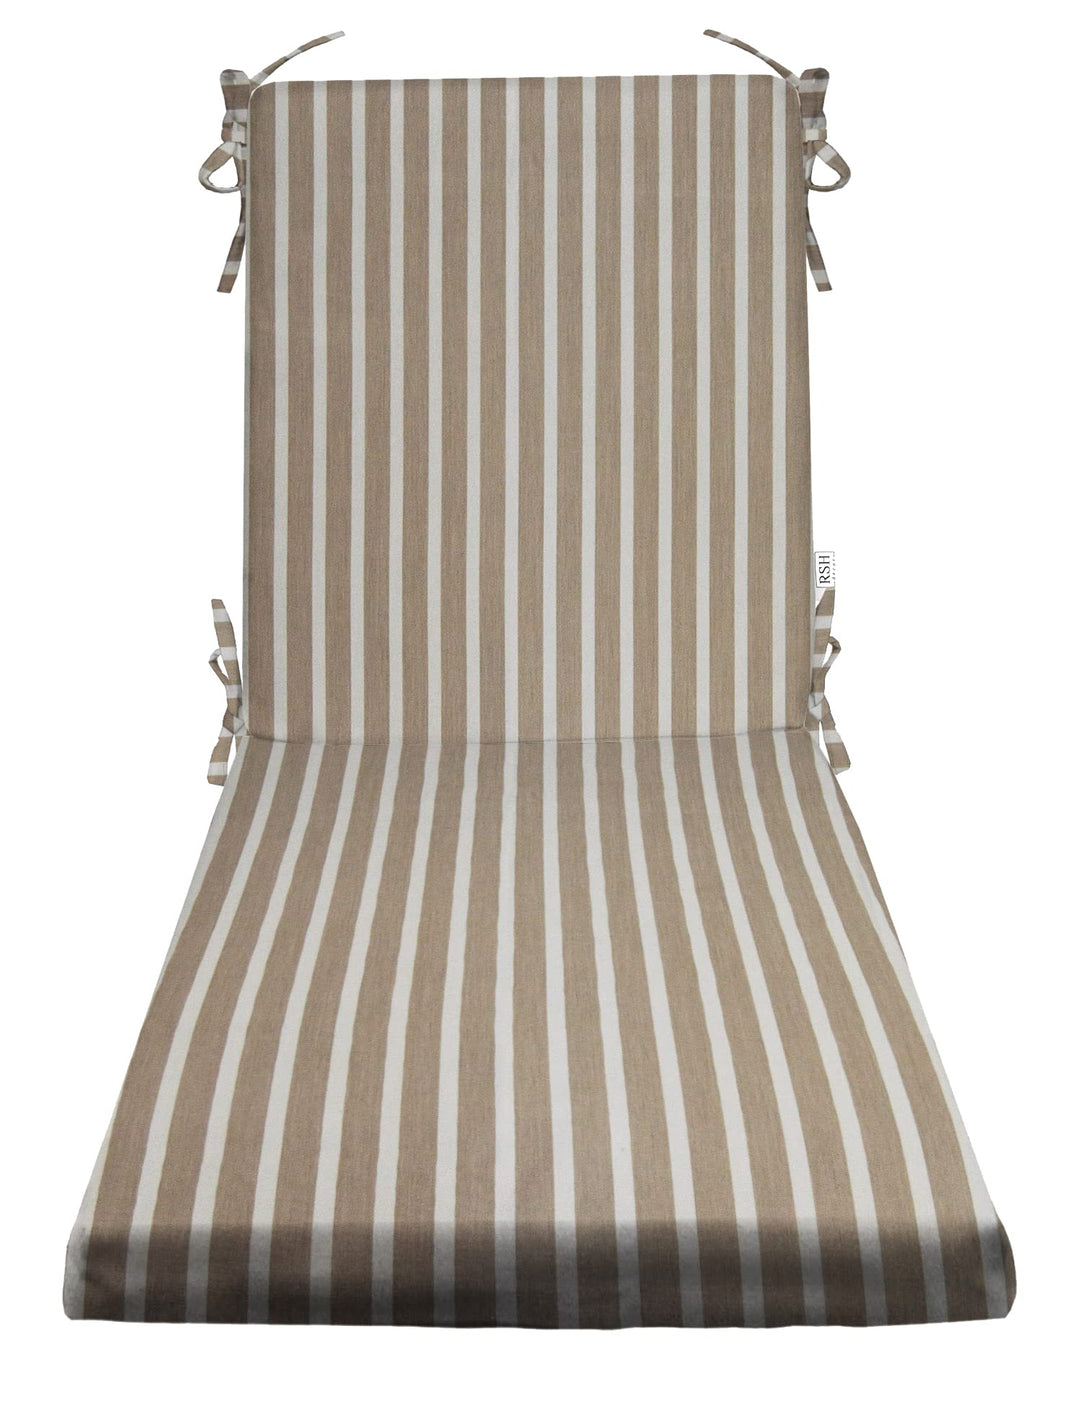 Chaise Lounge Chair Cushion, Foam, 72" H x 22" W", Sunbrella Patterns - RSH Decor